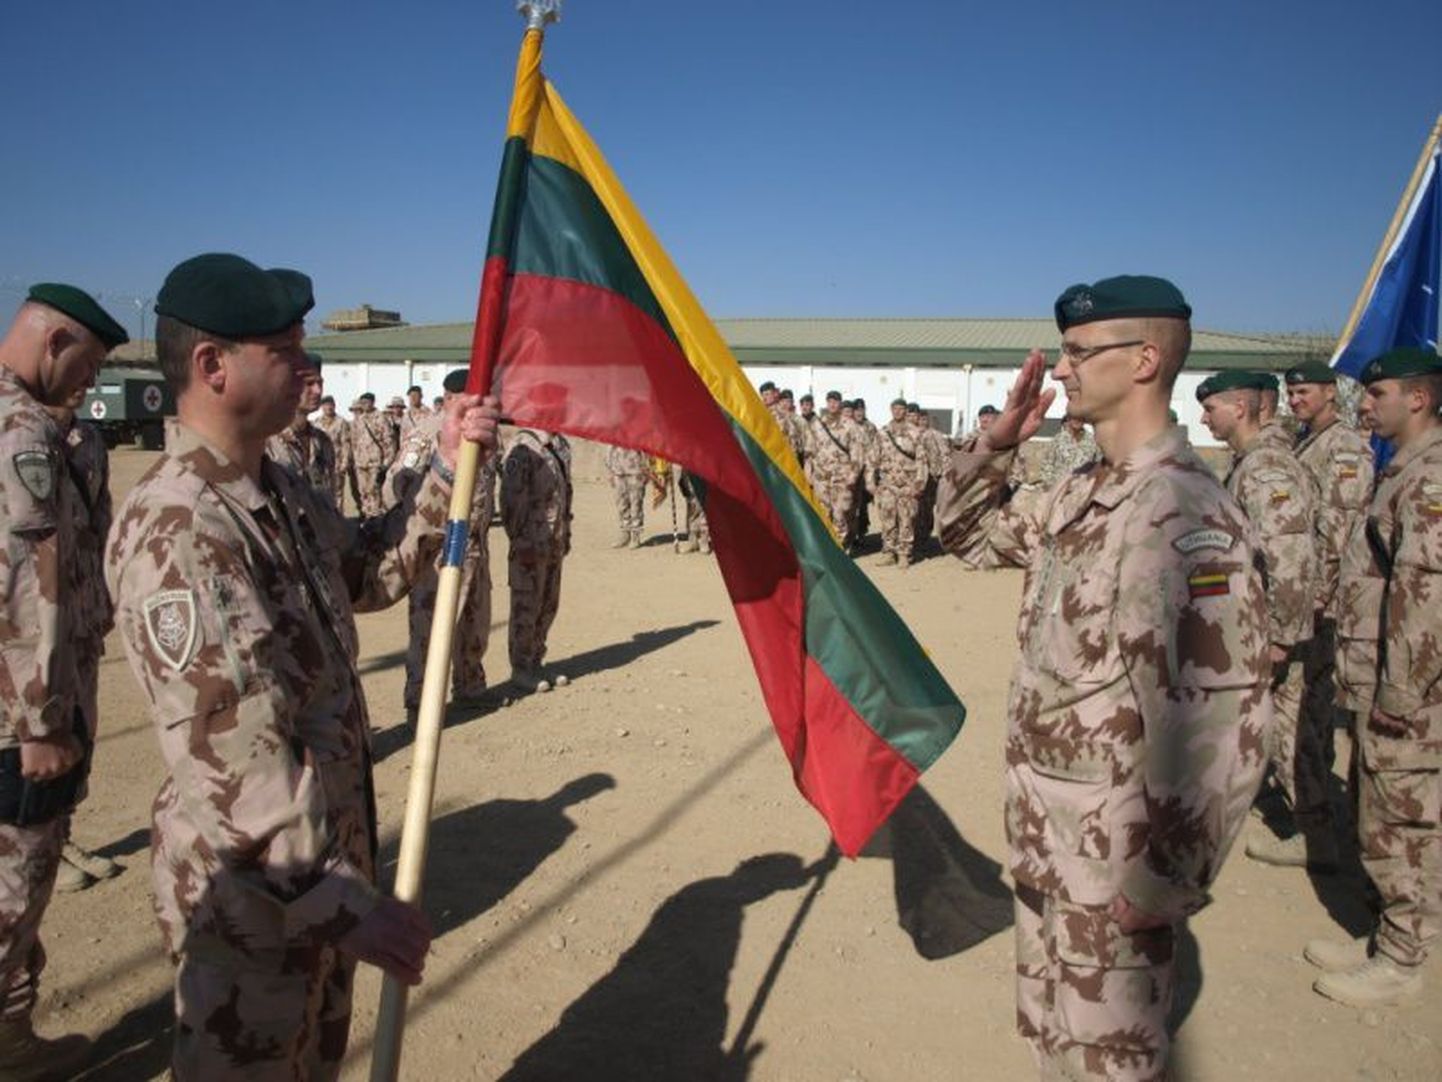 Leedu sõjaväelased Afganistanis.